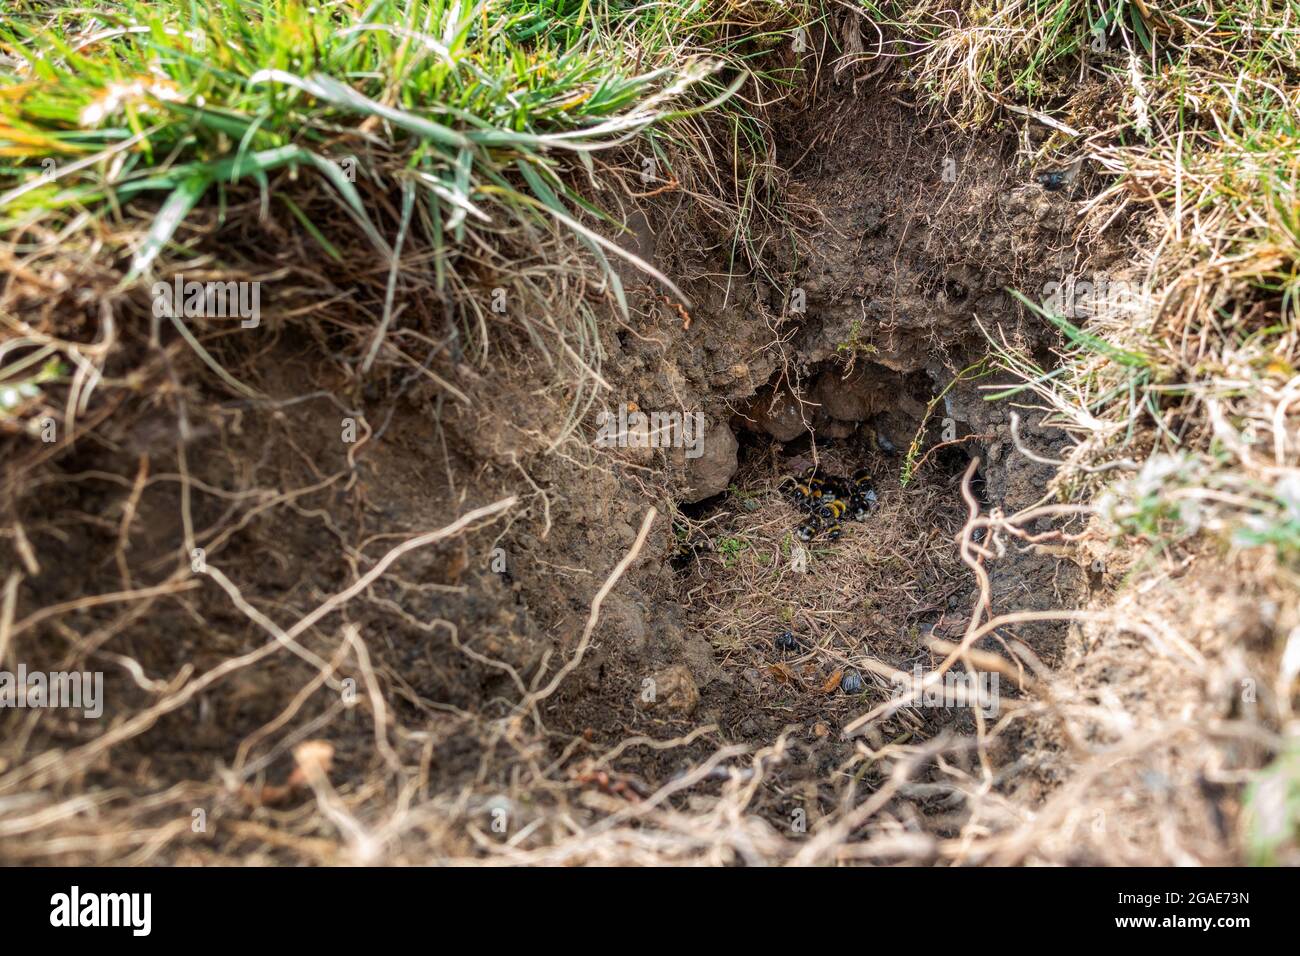 Les bourdons à queue de chameau nichent dans un trou de lapin qui semble avoir été prédaté (Bombus terrestris), West Yorkshire, Royaume-Uni Banque D'Images